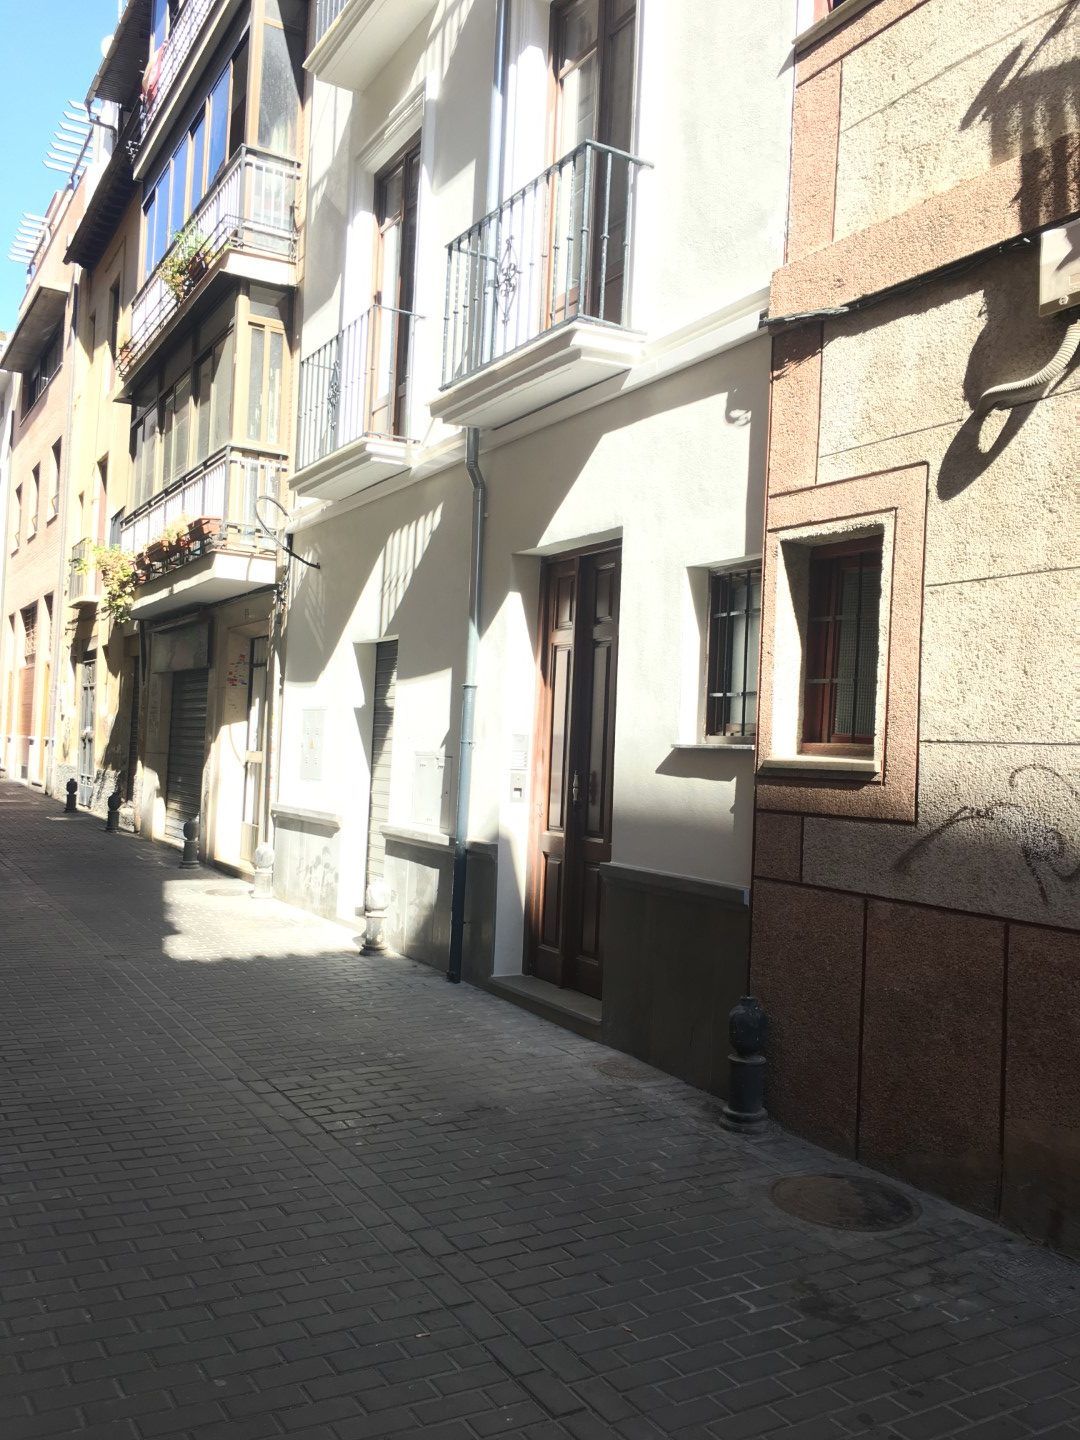 Rehabilitación de vivienda unifamiliar en calle Concepción (Granada)